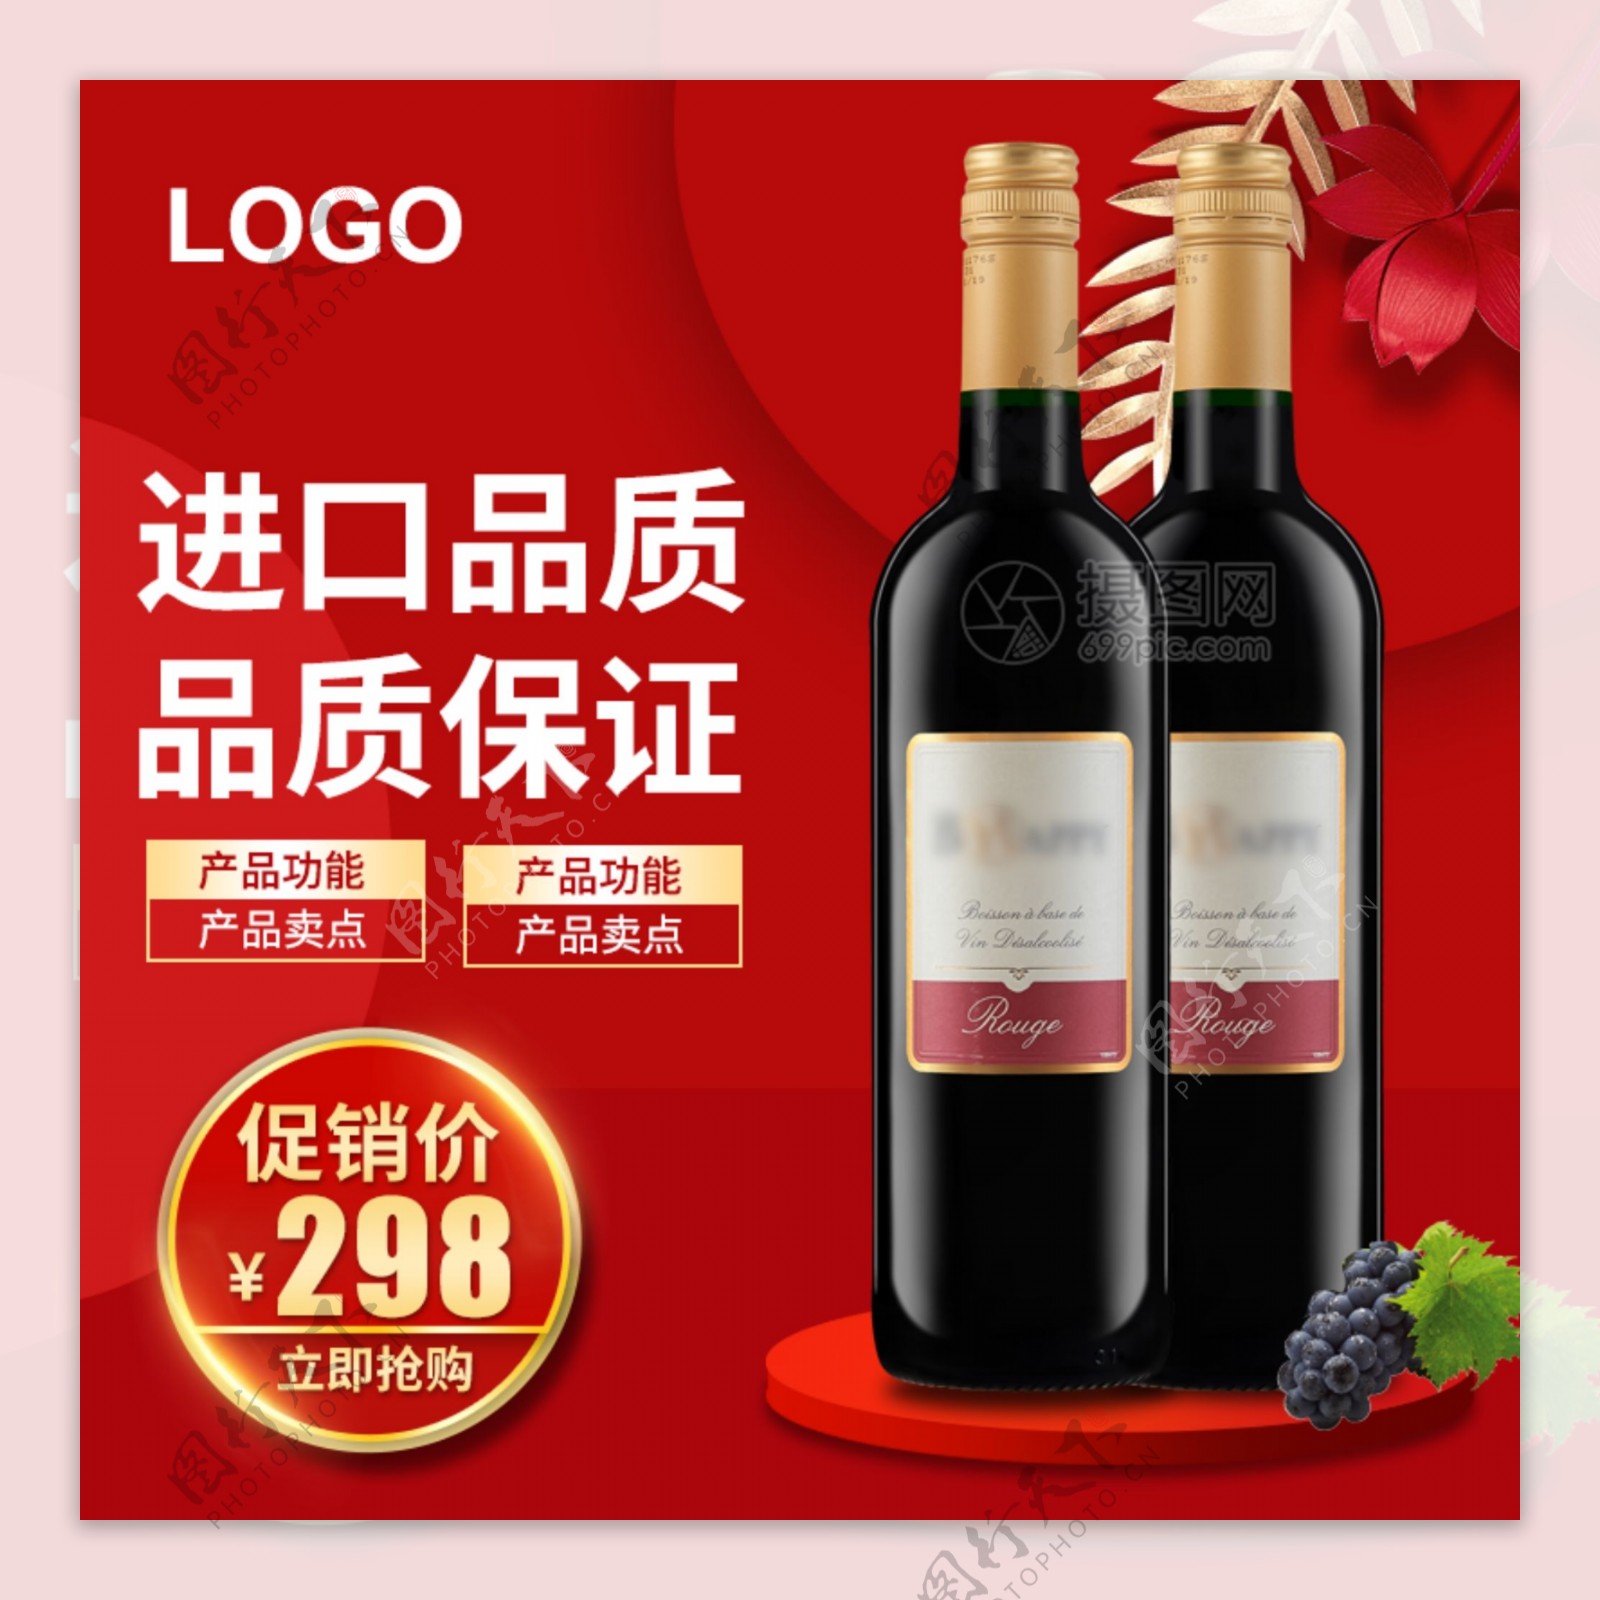 红色进口葡萄红酒酒类促销淘宝主图